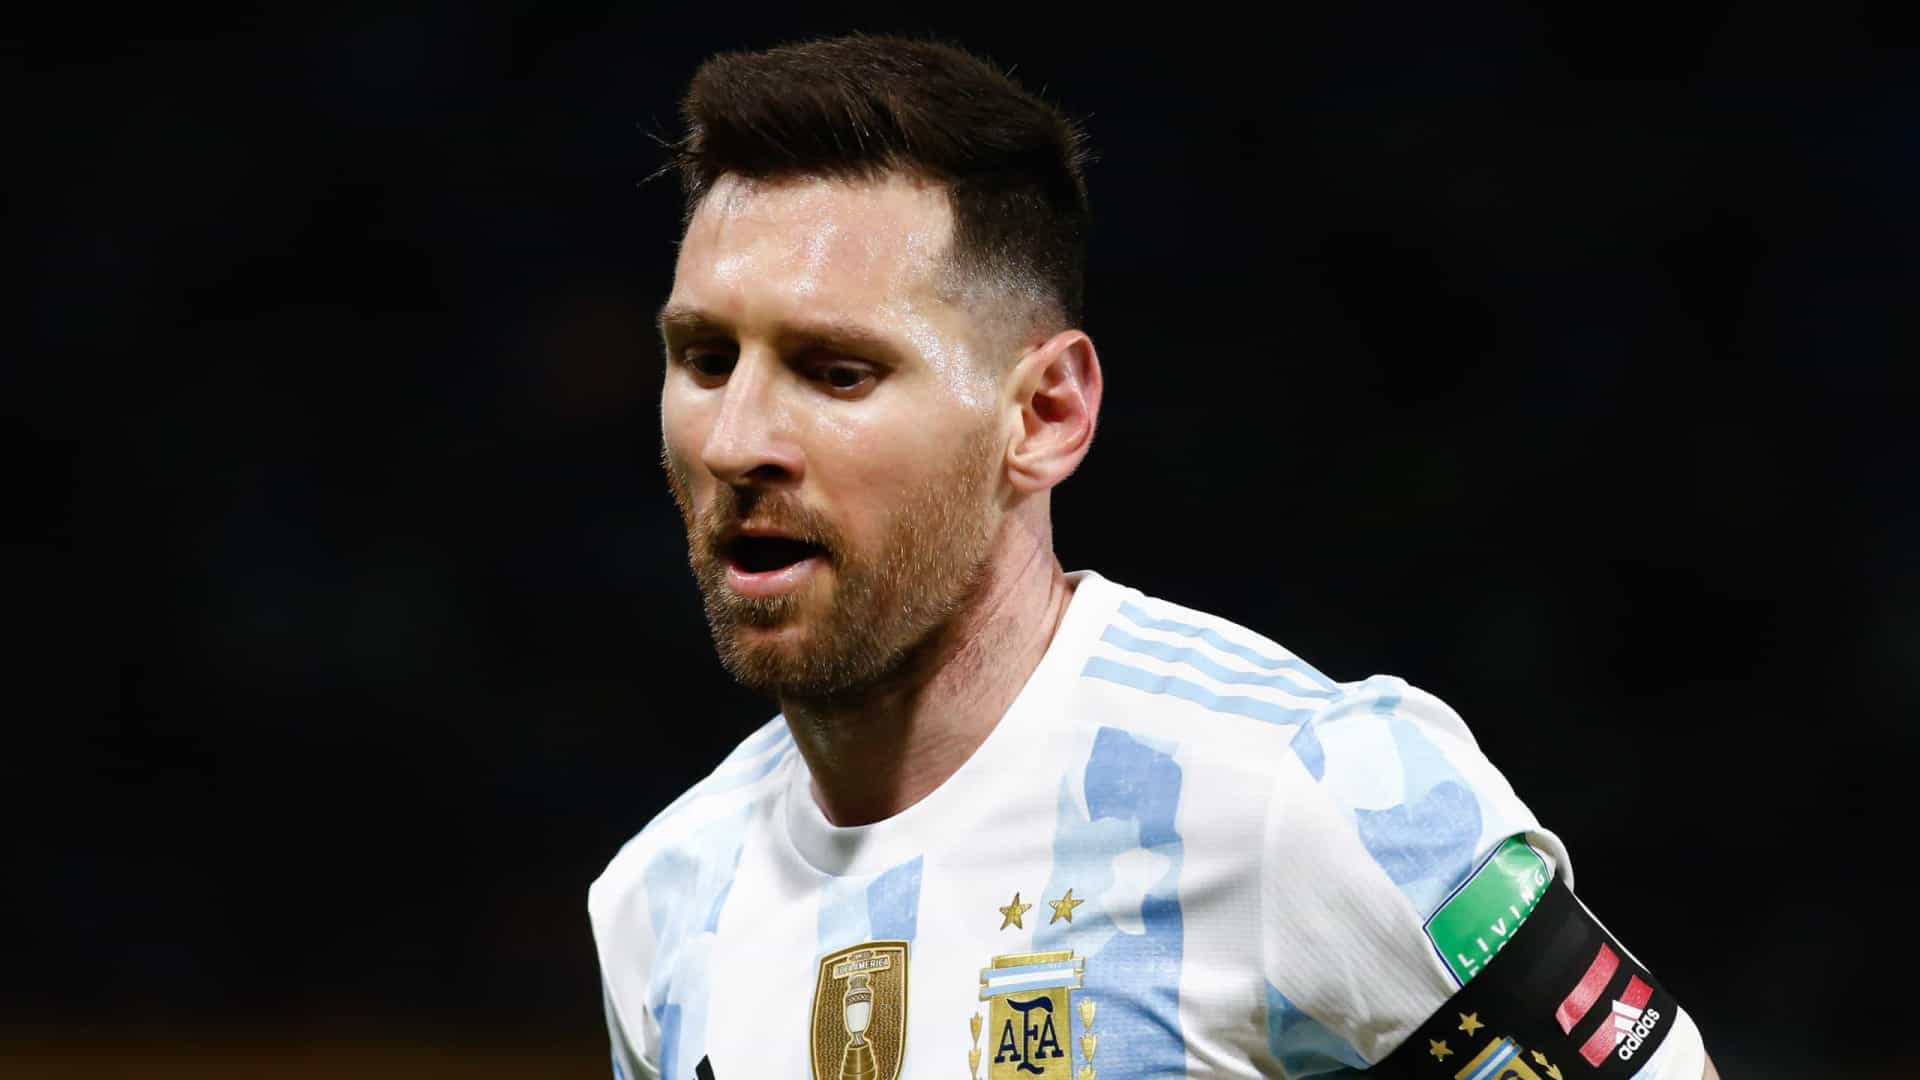 Argentine : Une photo de Messi a rendu fous les fans de Boca Juniors